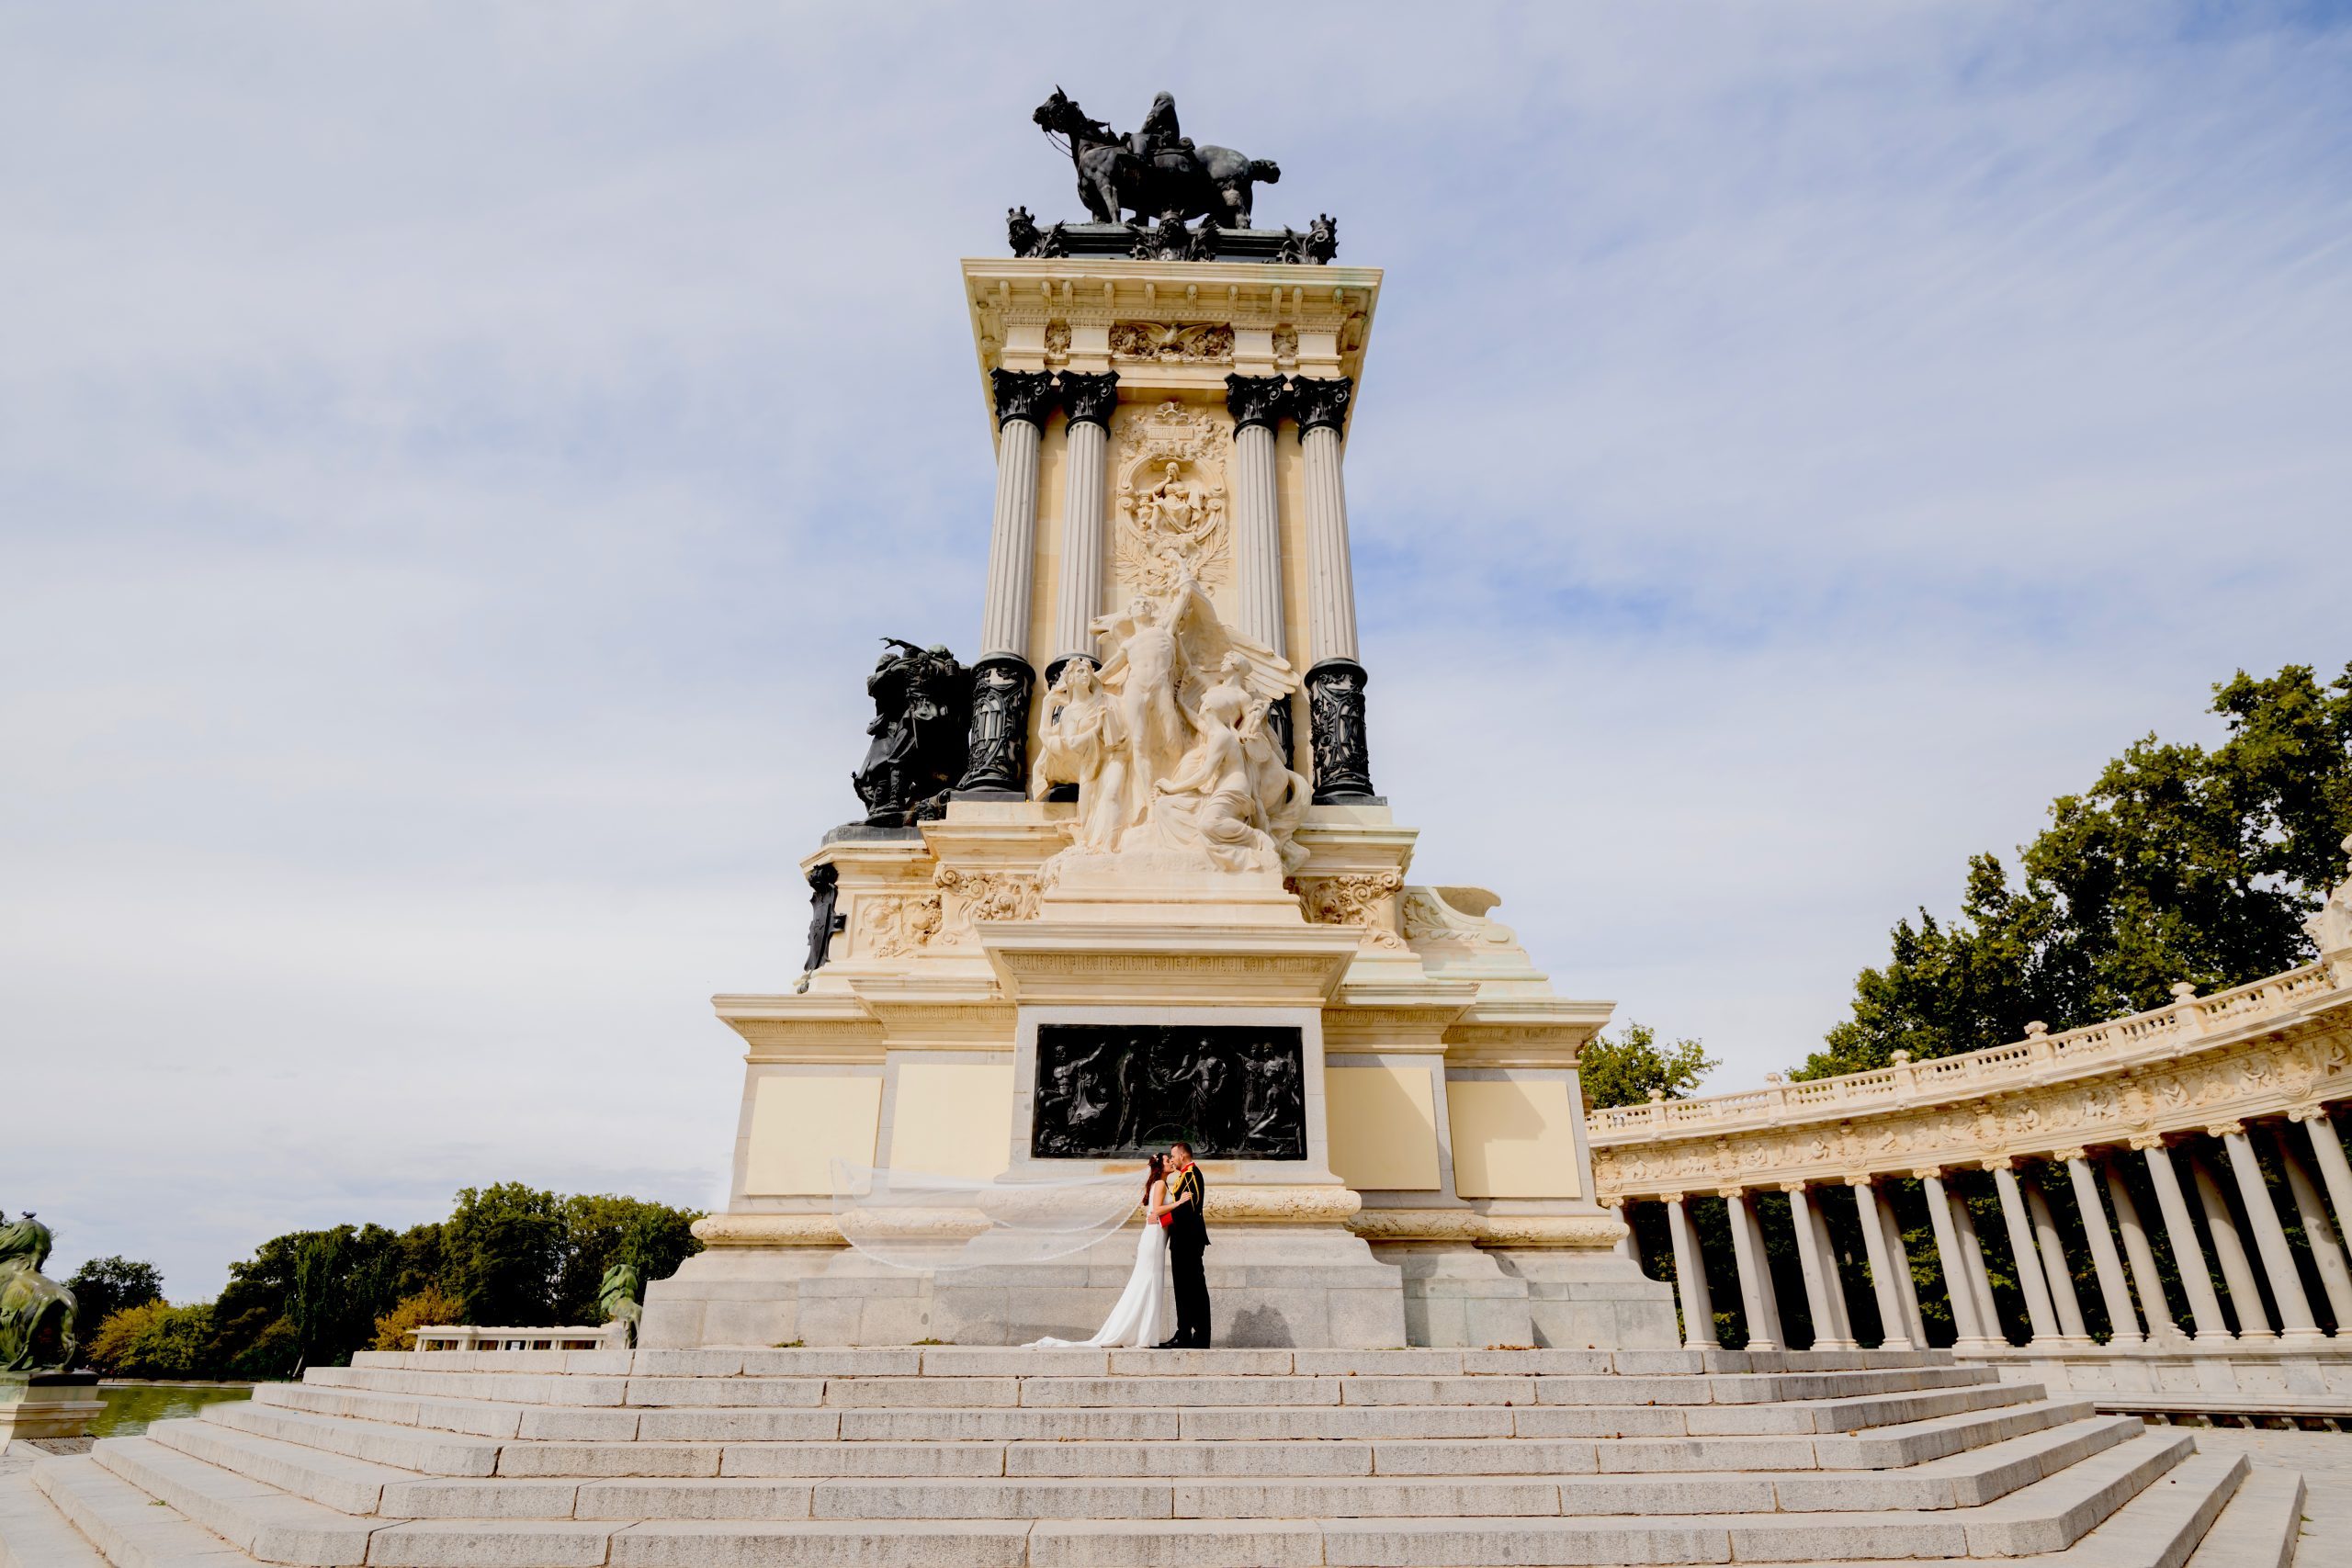 Fotografía de una pareja al lado de un monumento